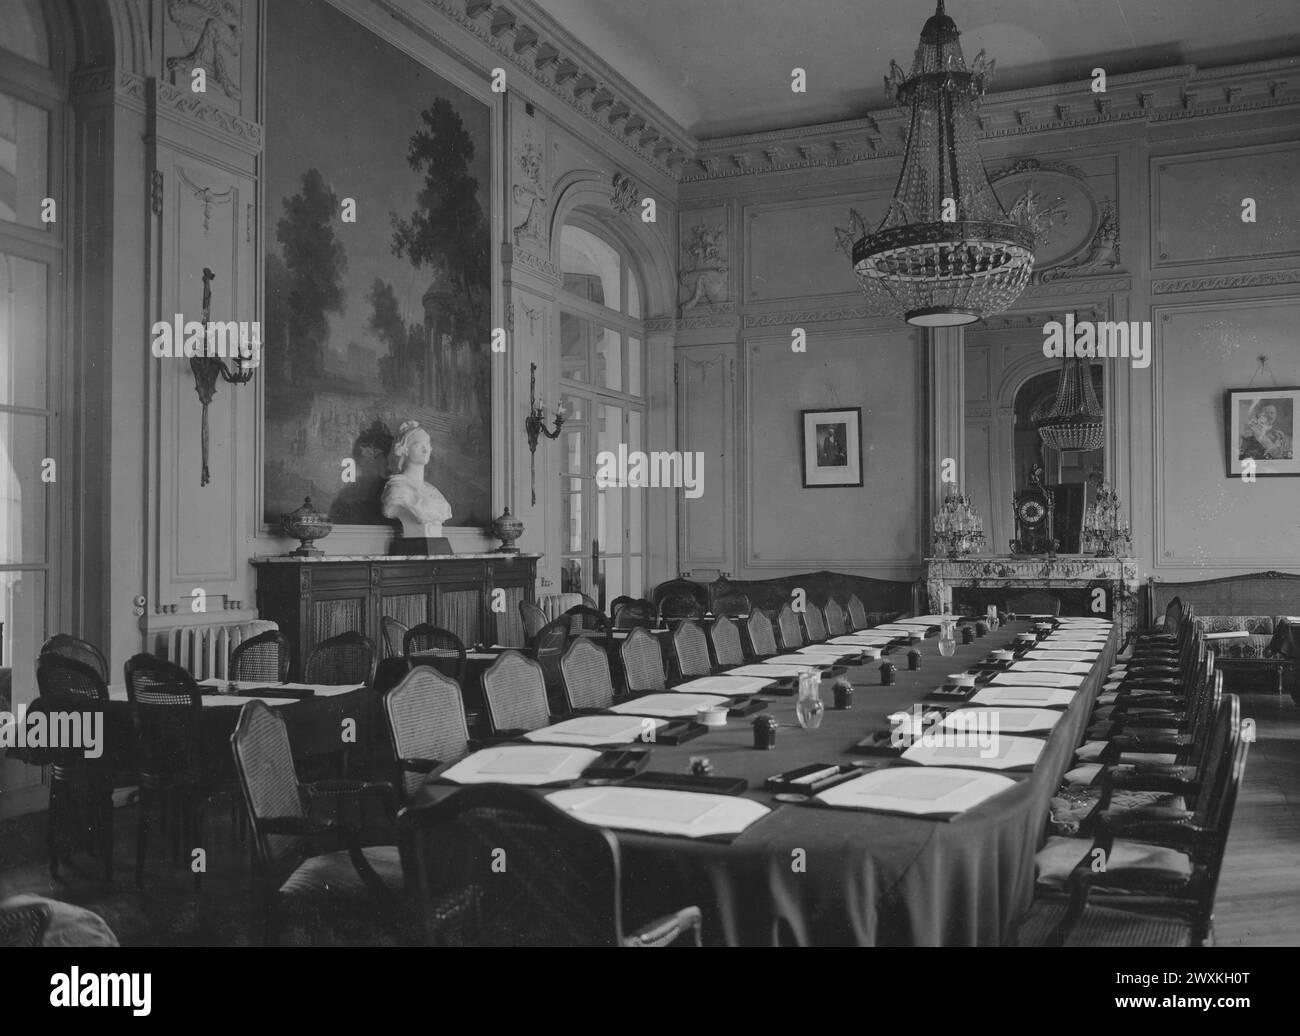 Salle de réunion des délégués de paix alliés. Versailles, France CA. 1919 Banque D'Images